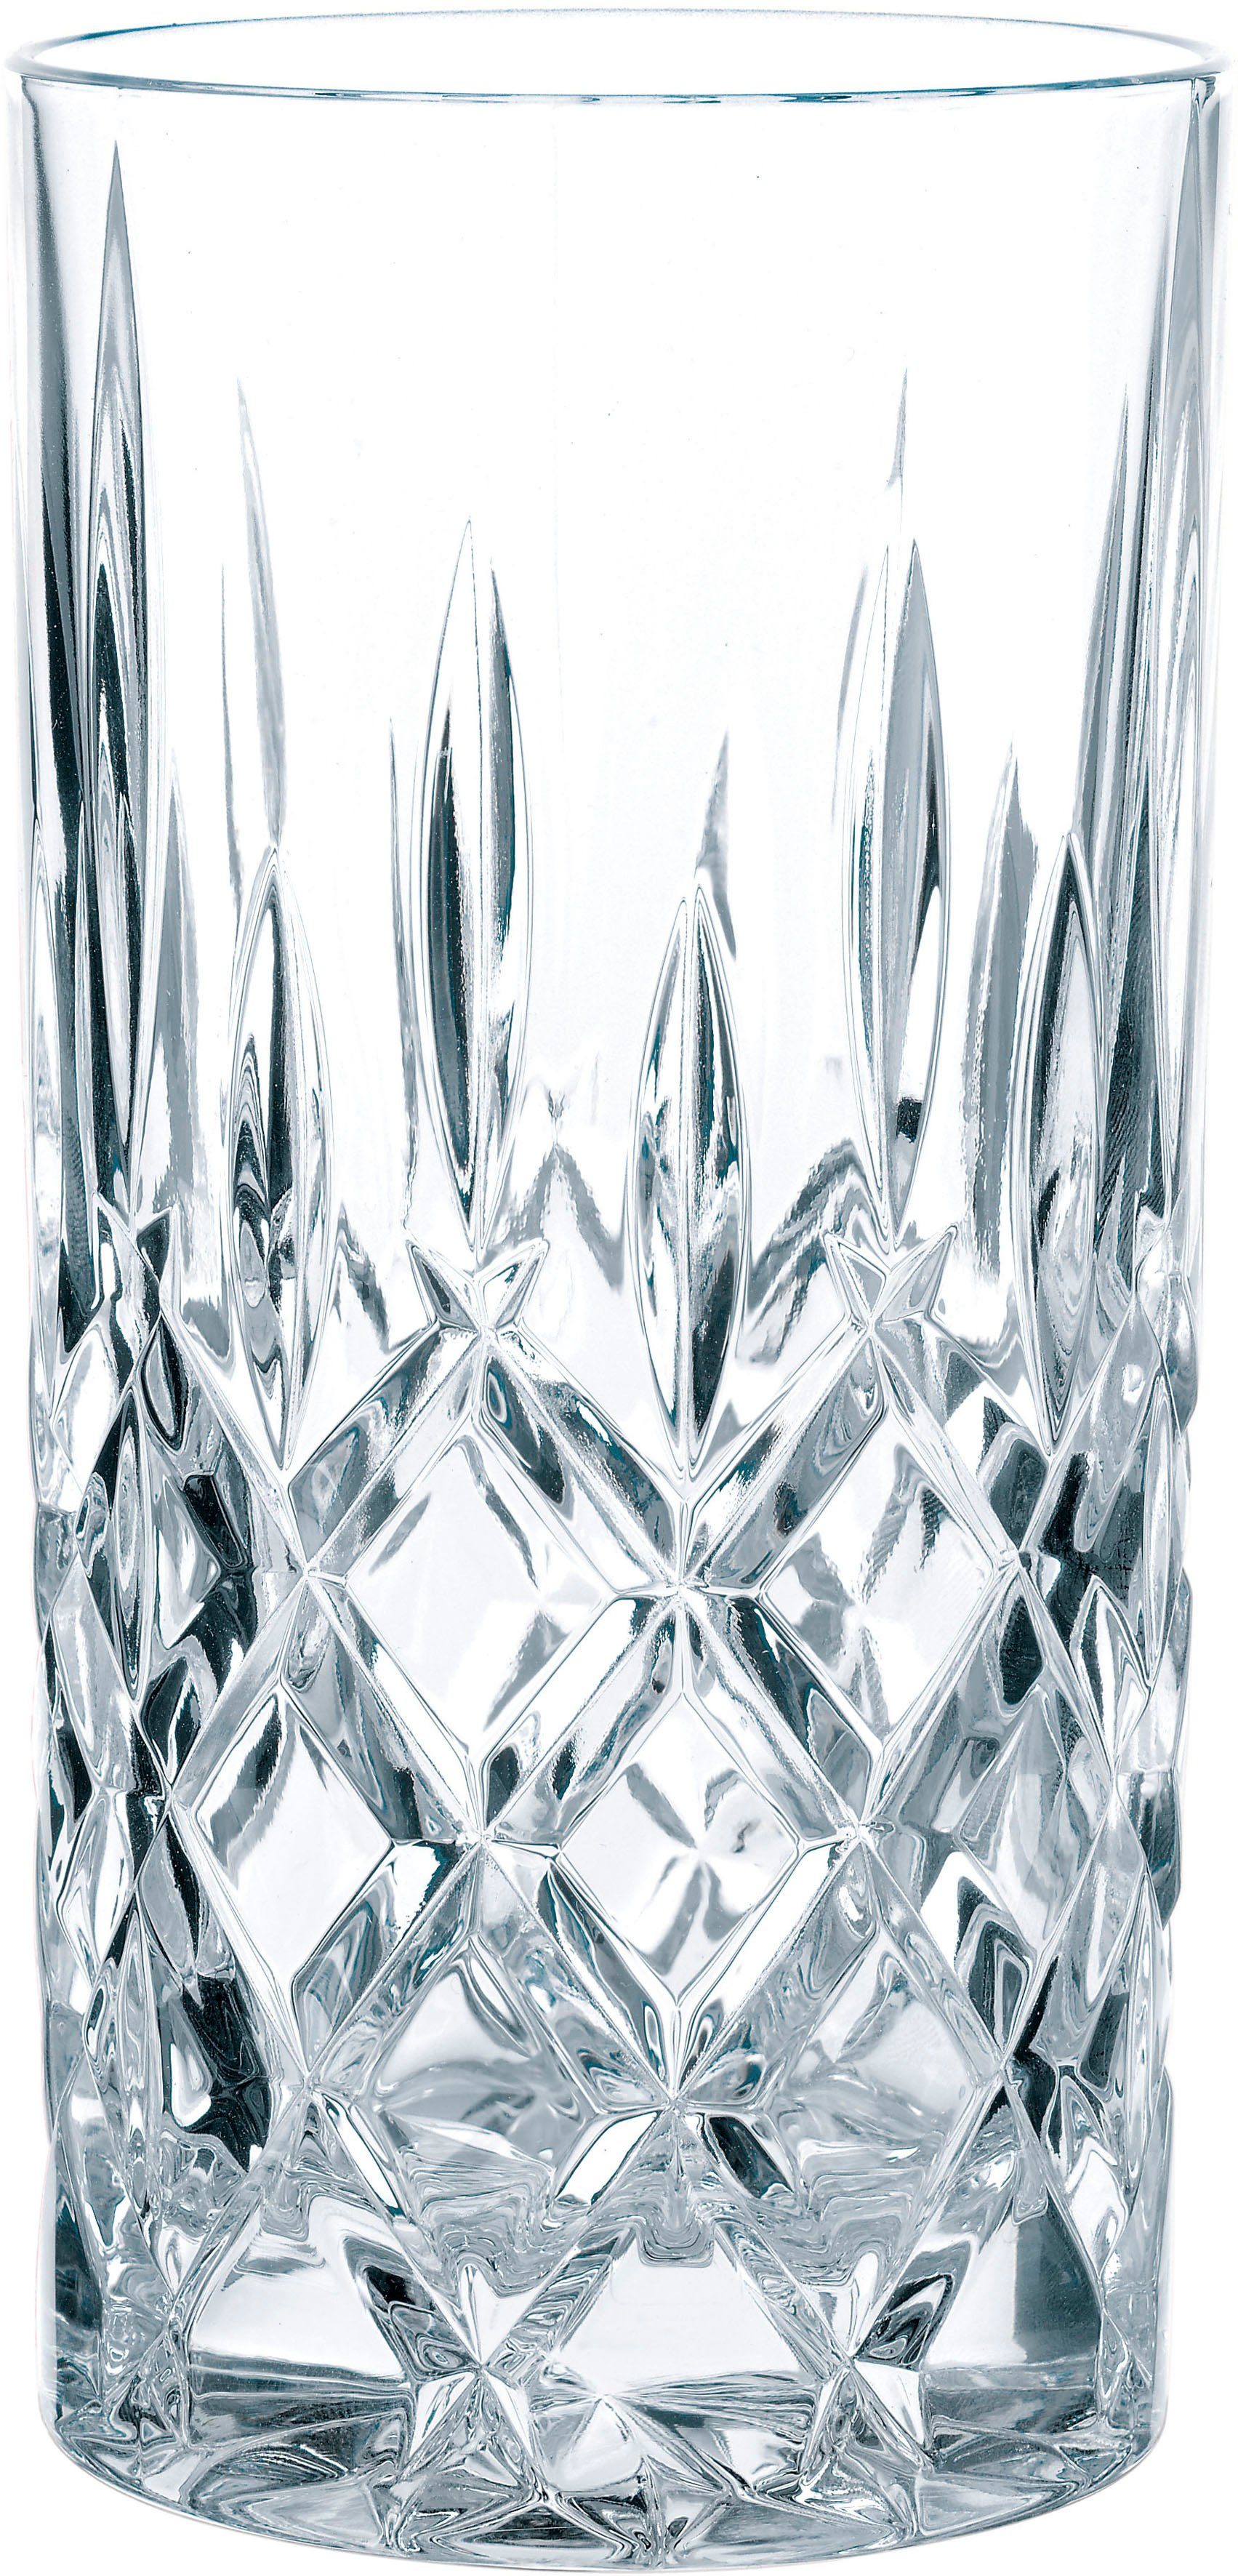 Nachtmann Longdrinkglas Noblesse, Kristallglas, Made ml, Germany, 6-teilig in 395